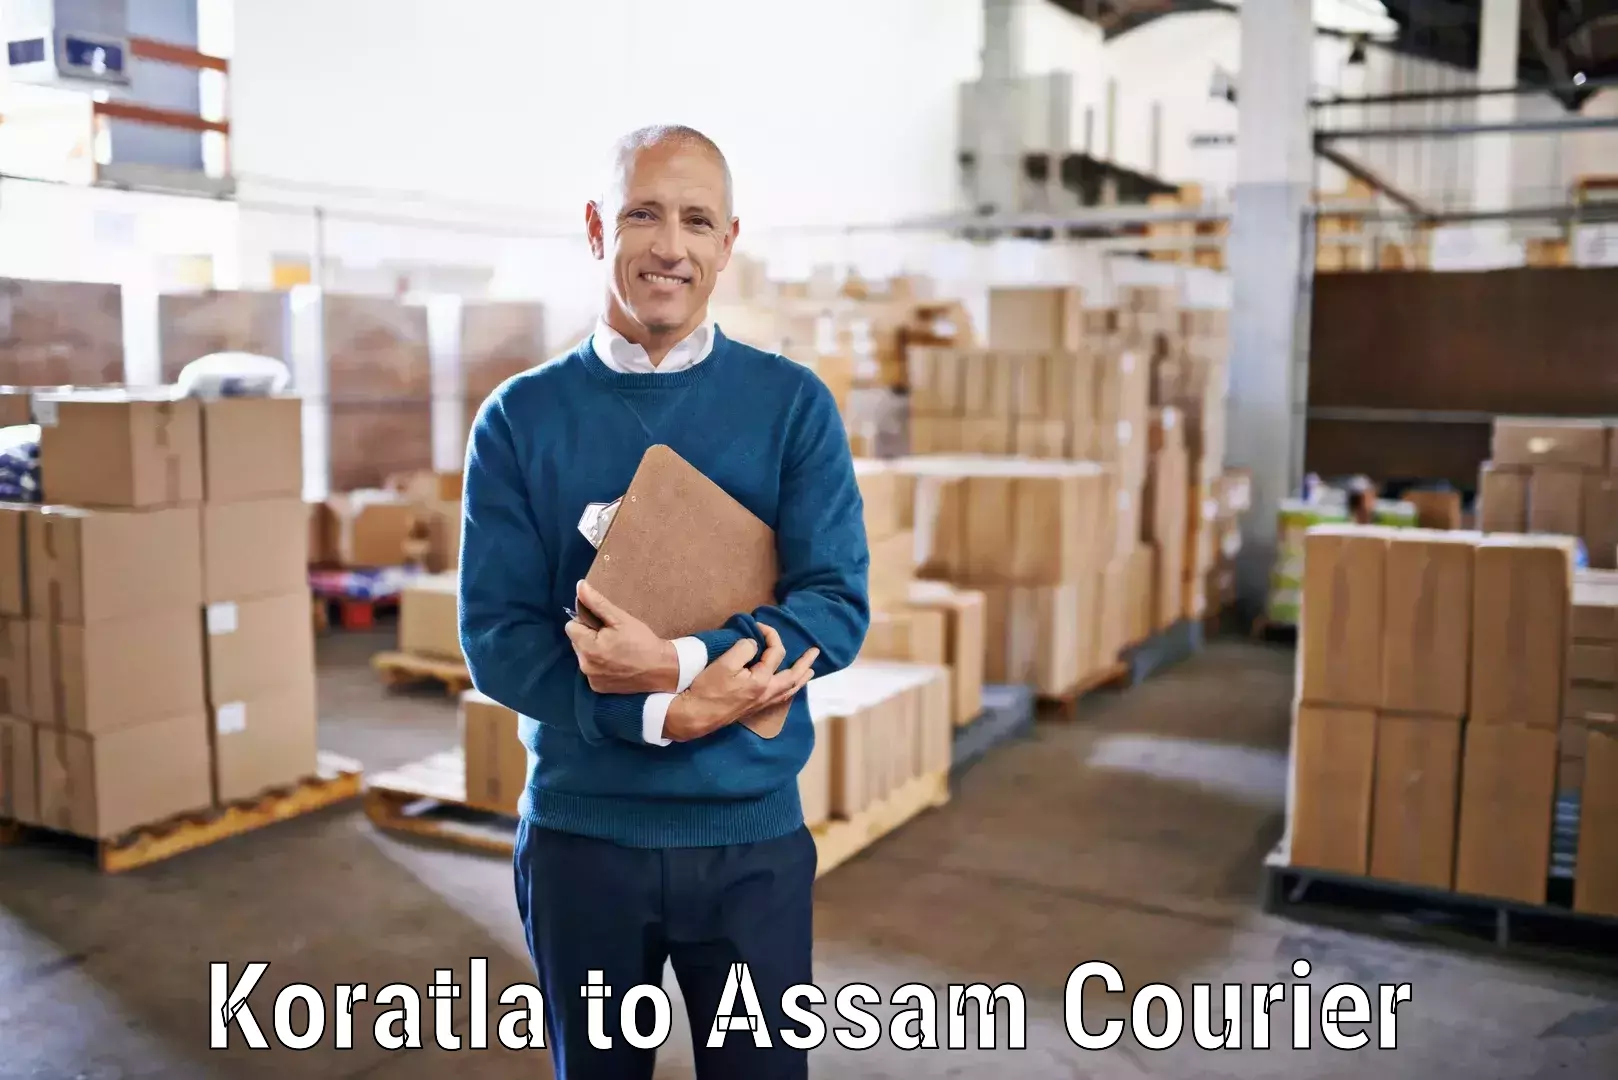 Nationwide courier service Koratla to Assam